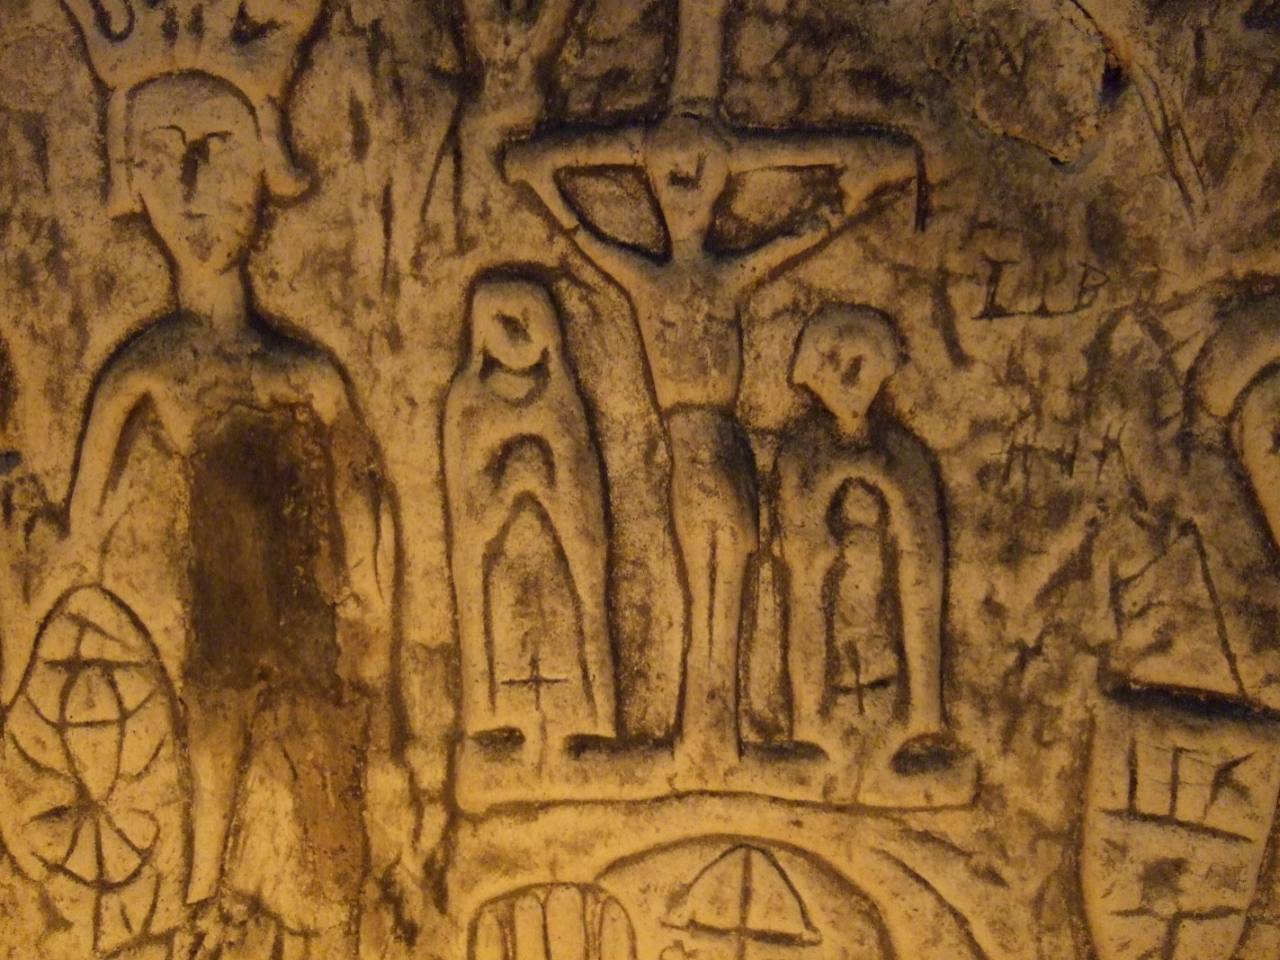 Simbole dhe gdhendje misterioze në shpellën Royston 4 të krijuar nga njeriu